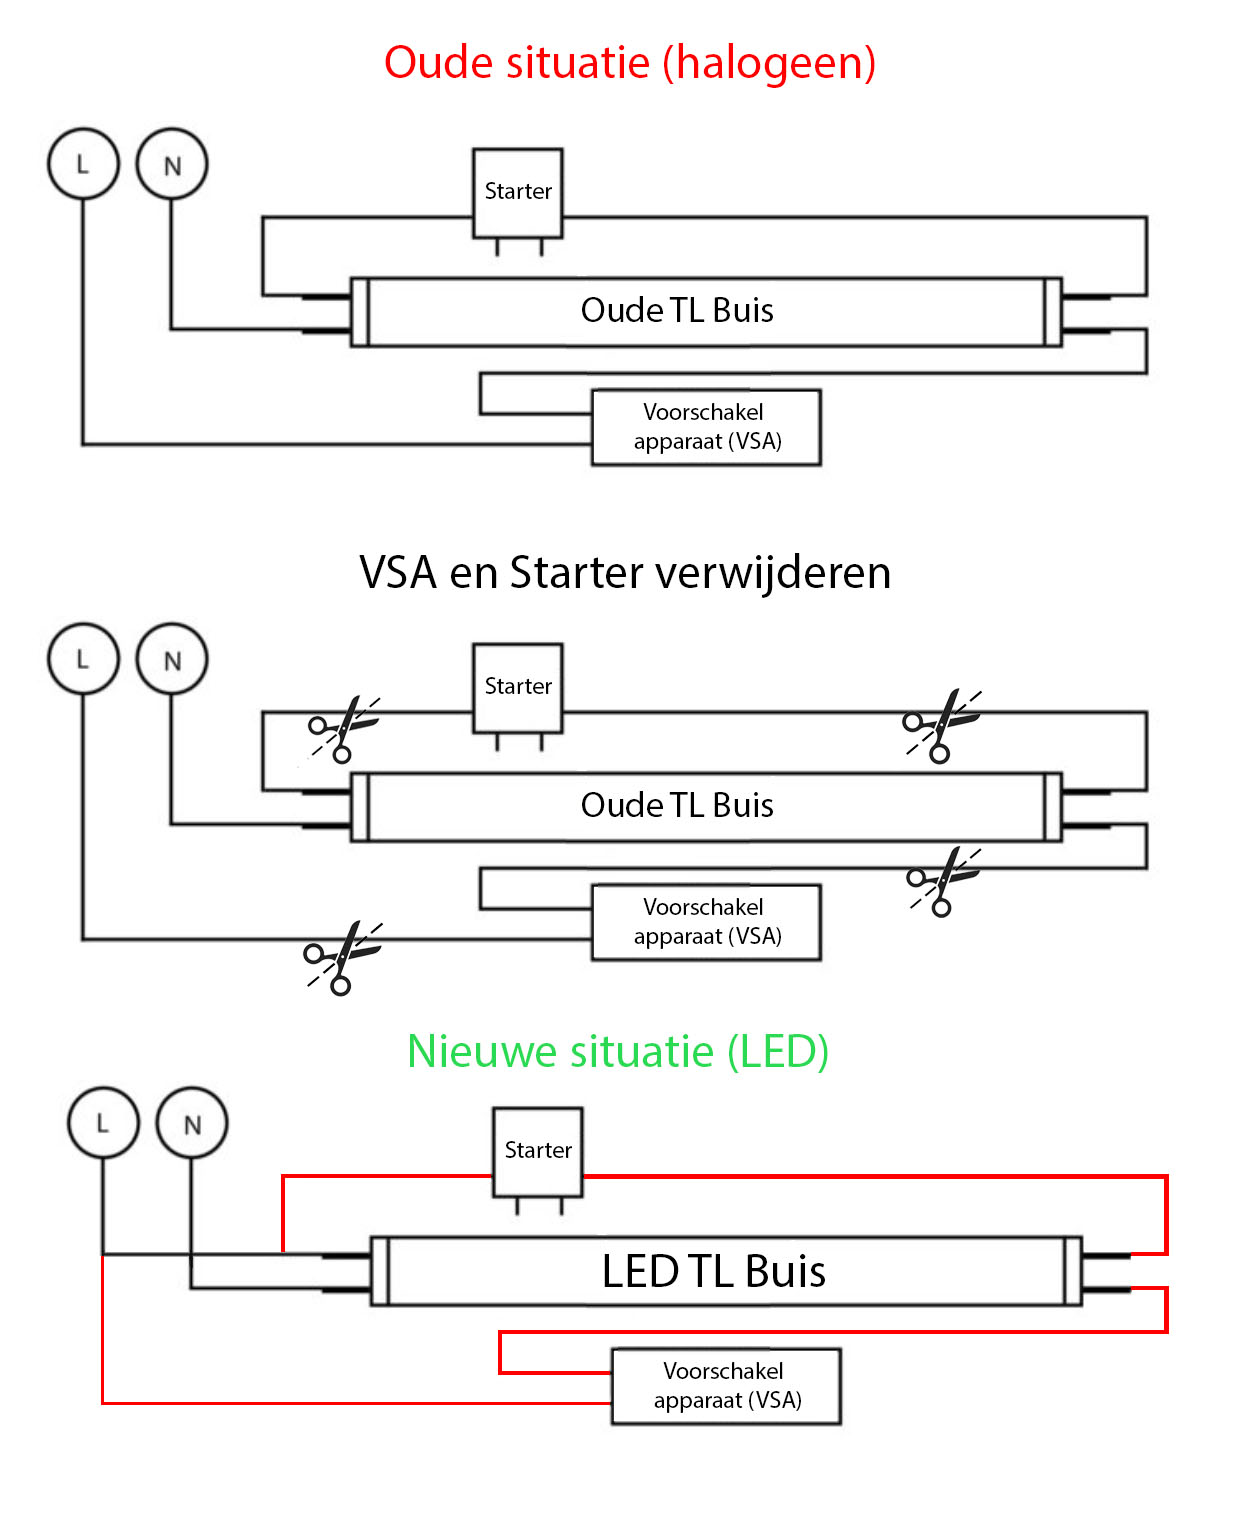 LED halogeen buizen vervangen voor LED buizen - verwijderen van de VSA en starter